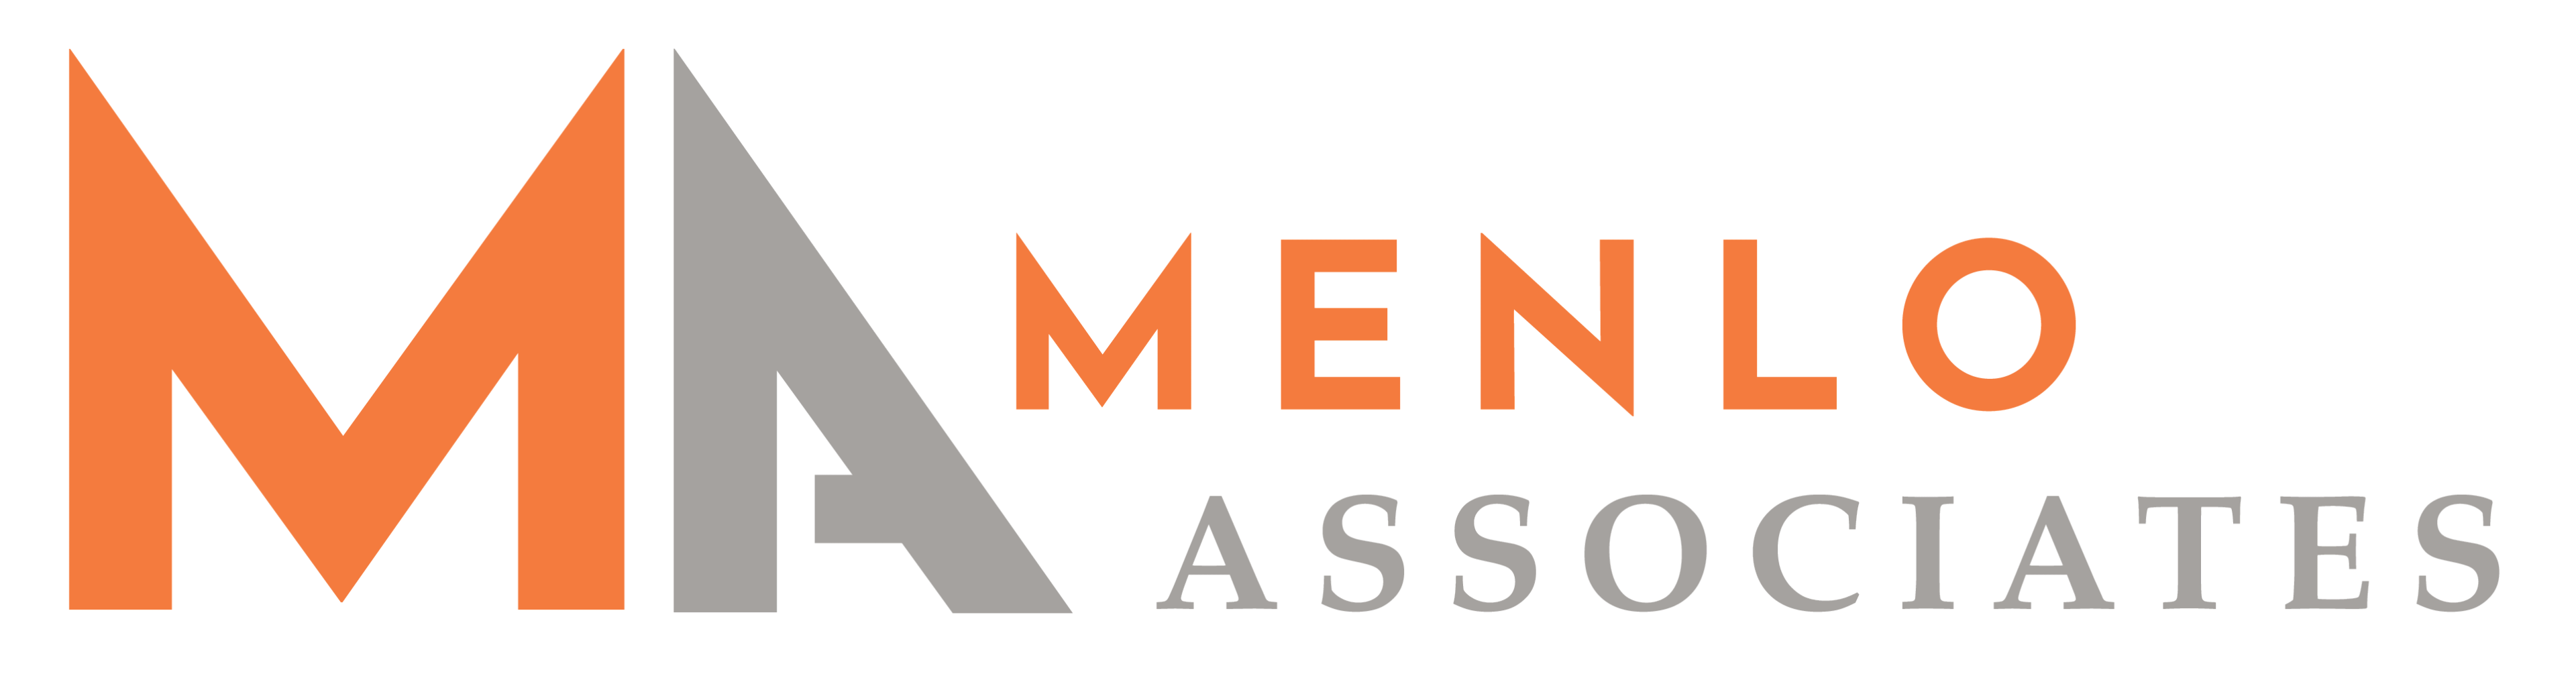 Menlo Associates logo